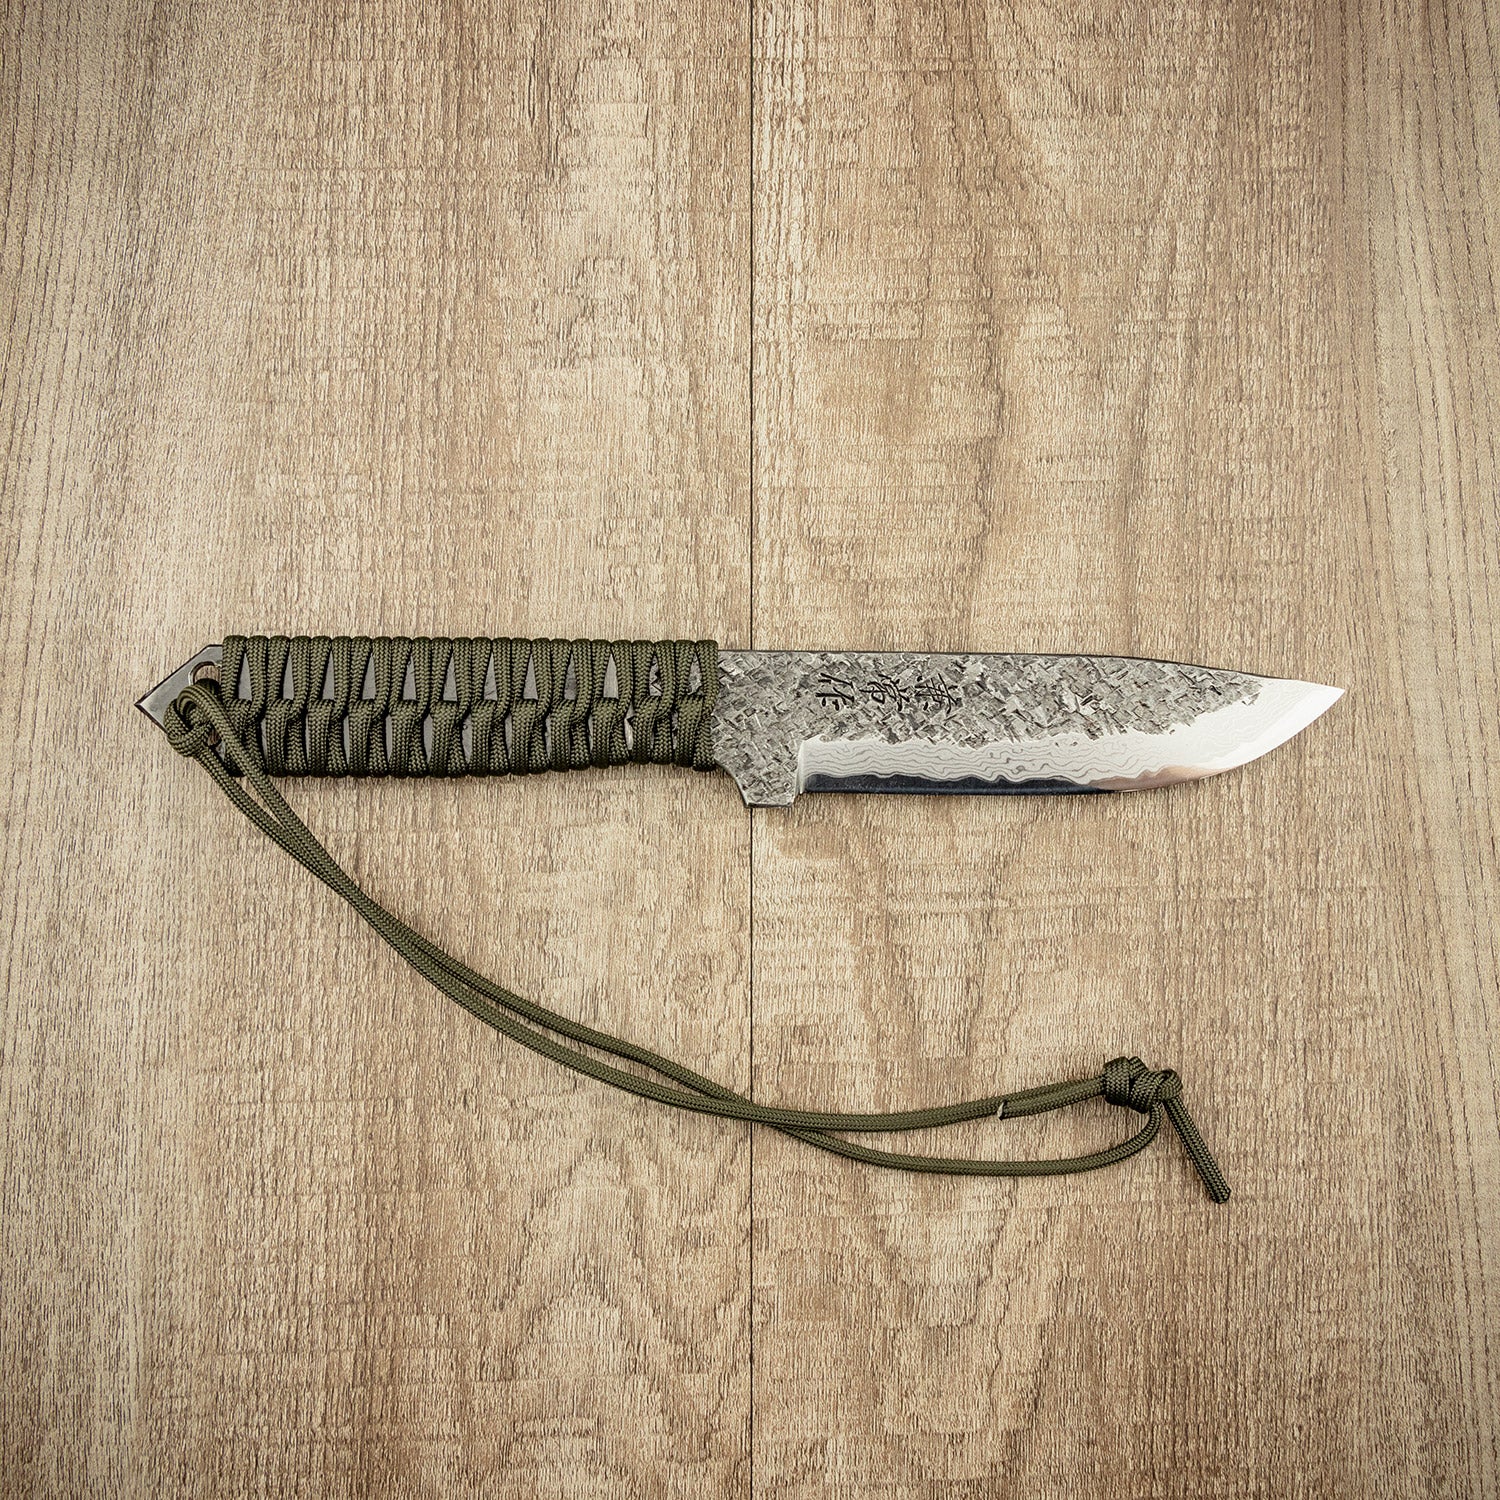 Seki Kanetsune "KARASU" Outdoor Knife 125MM